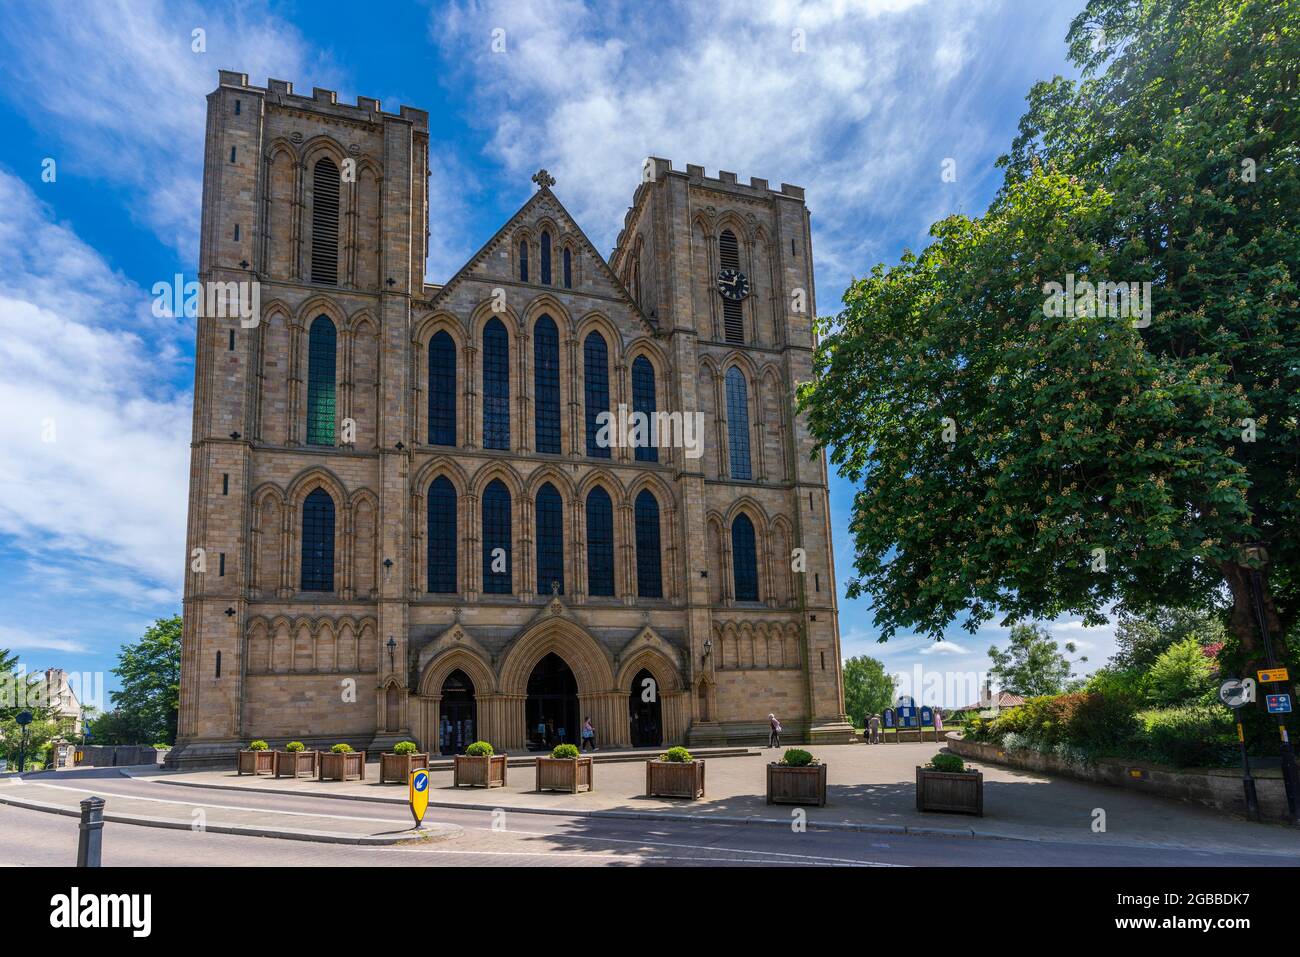 Vue sur l'église de la cathédrale de Ripon de Saint-Pierre et Saint-Wilfrid, Ripon, North Yorkshire, Angleterre, Royaume-Uni, Europe Banque D'Images